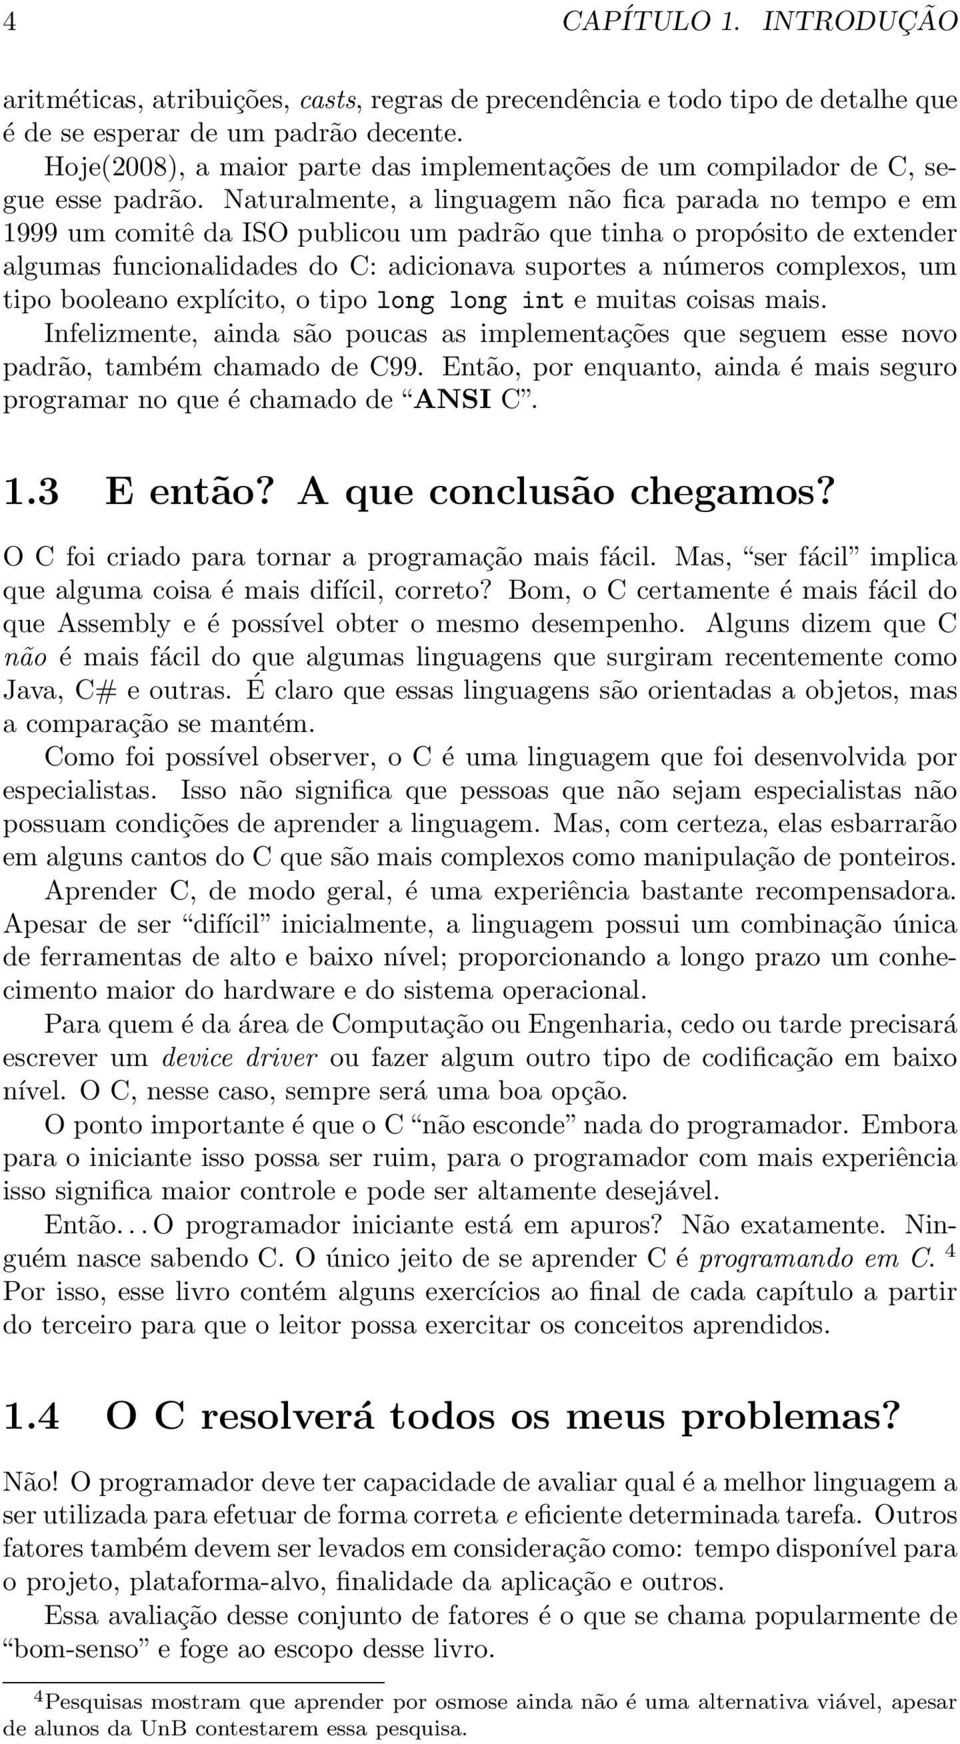 Naturalmente, a linguagem não fica parada no tempo e em 1999 um comitê da ISO publicou um padrão que tinha o propósito de extender algumas funcionalidades do C: adicionava suportes a números